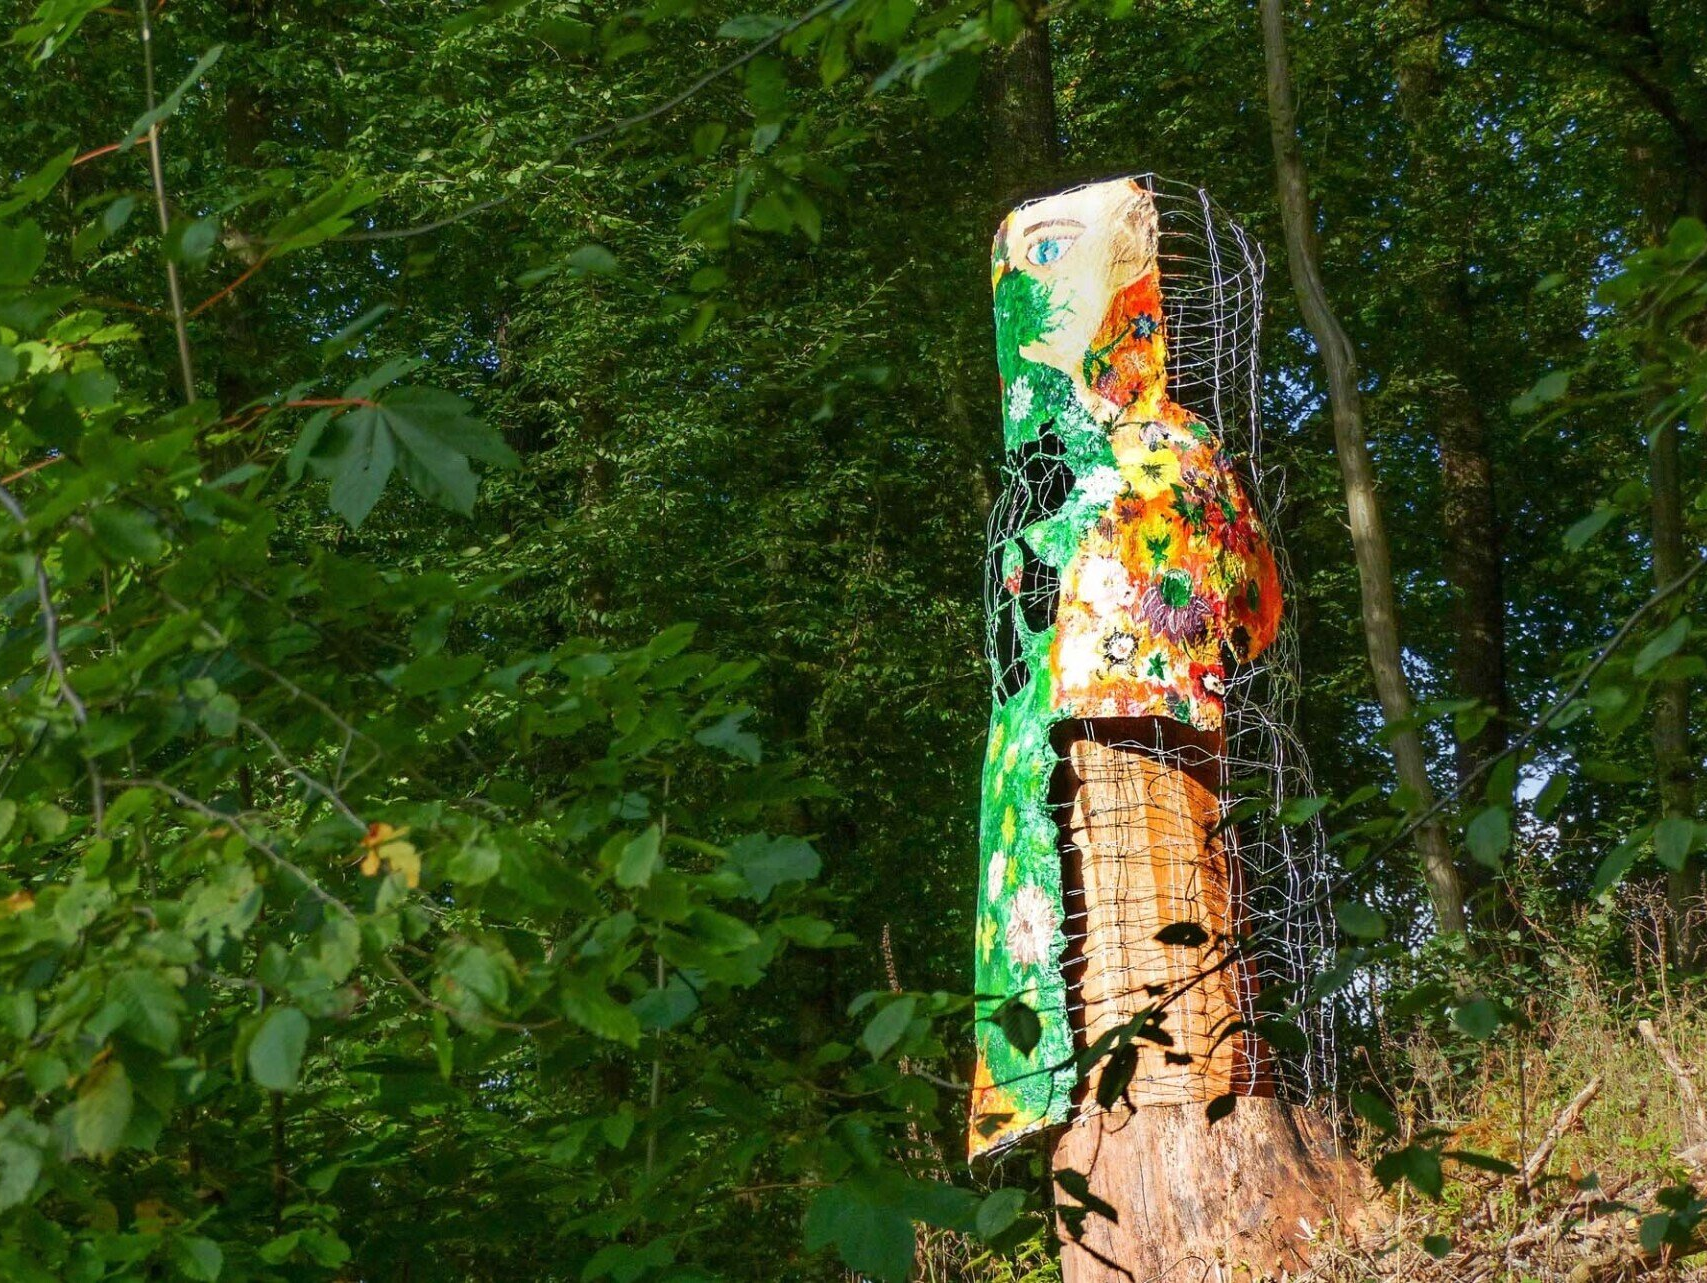 Ein Kunstwerk steht an einem Hang im Grünen. Das Kunstwerk besteht aus einem Rest eines aufragenden Baumstamms mit angemalter Rinde verkleidet.